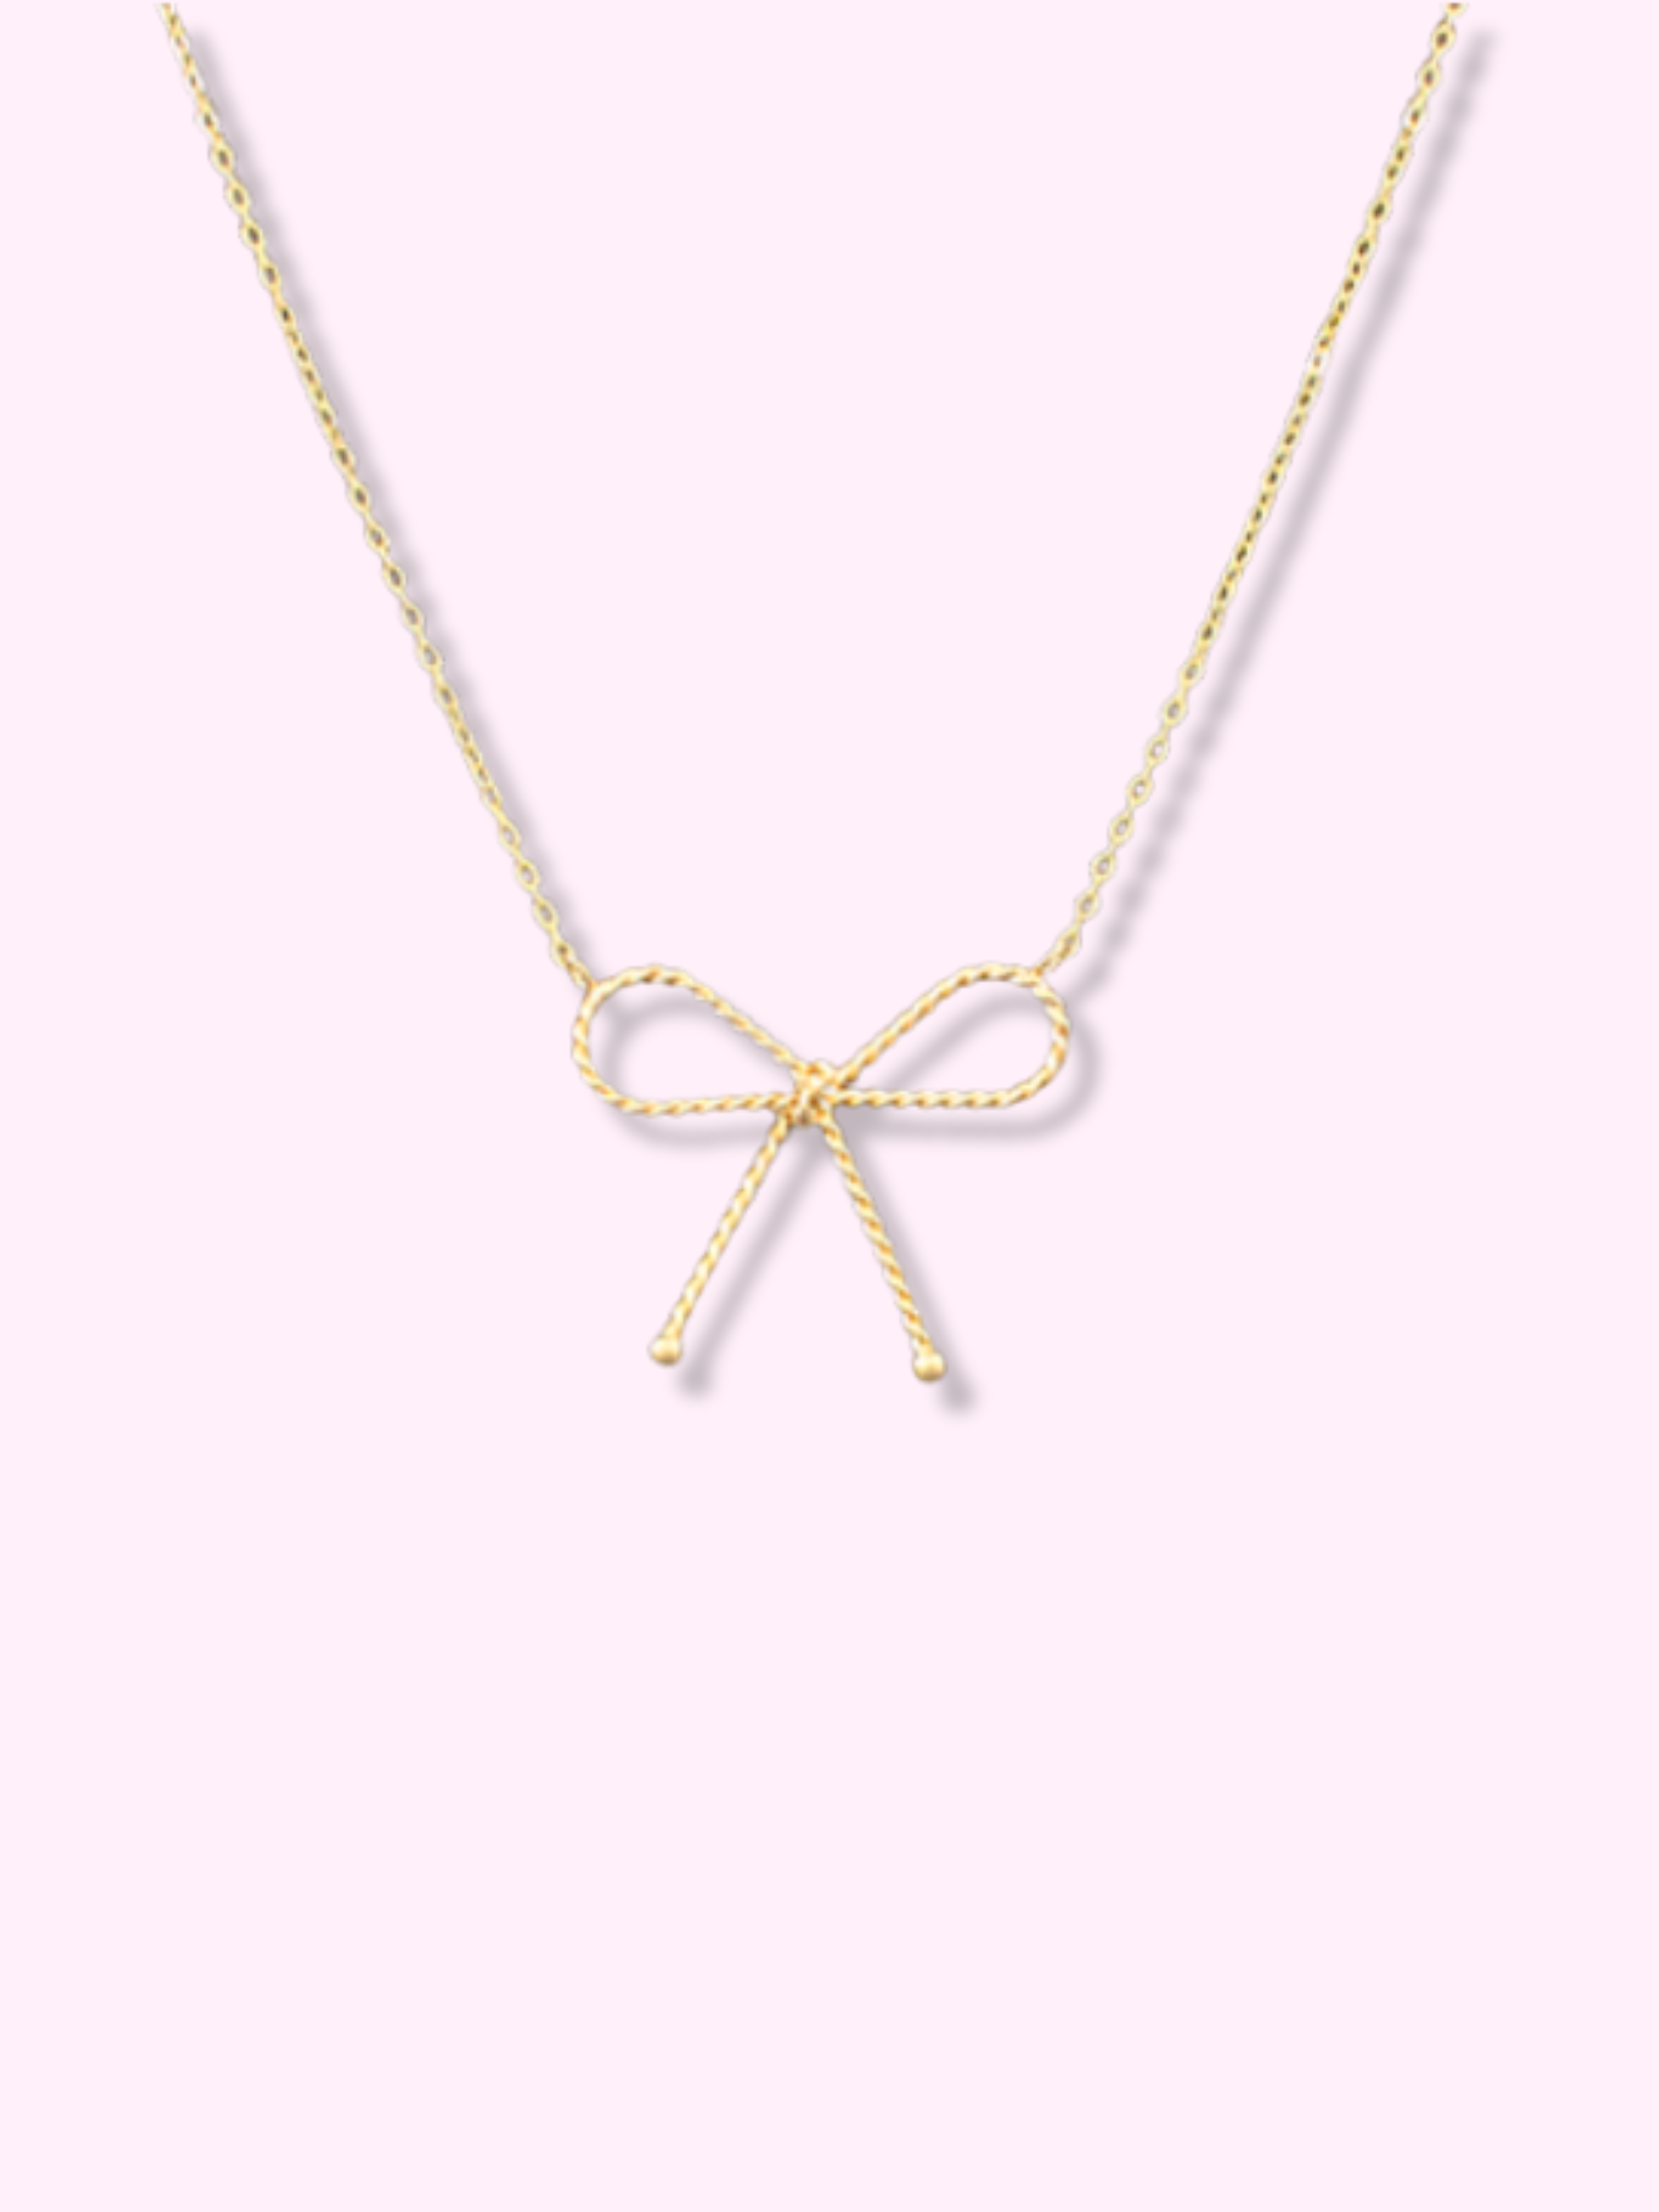 Gold Bow Necklace | Sassy Shortcake | sassyshortcake.com